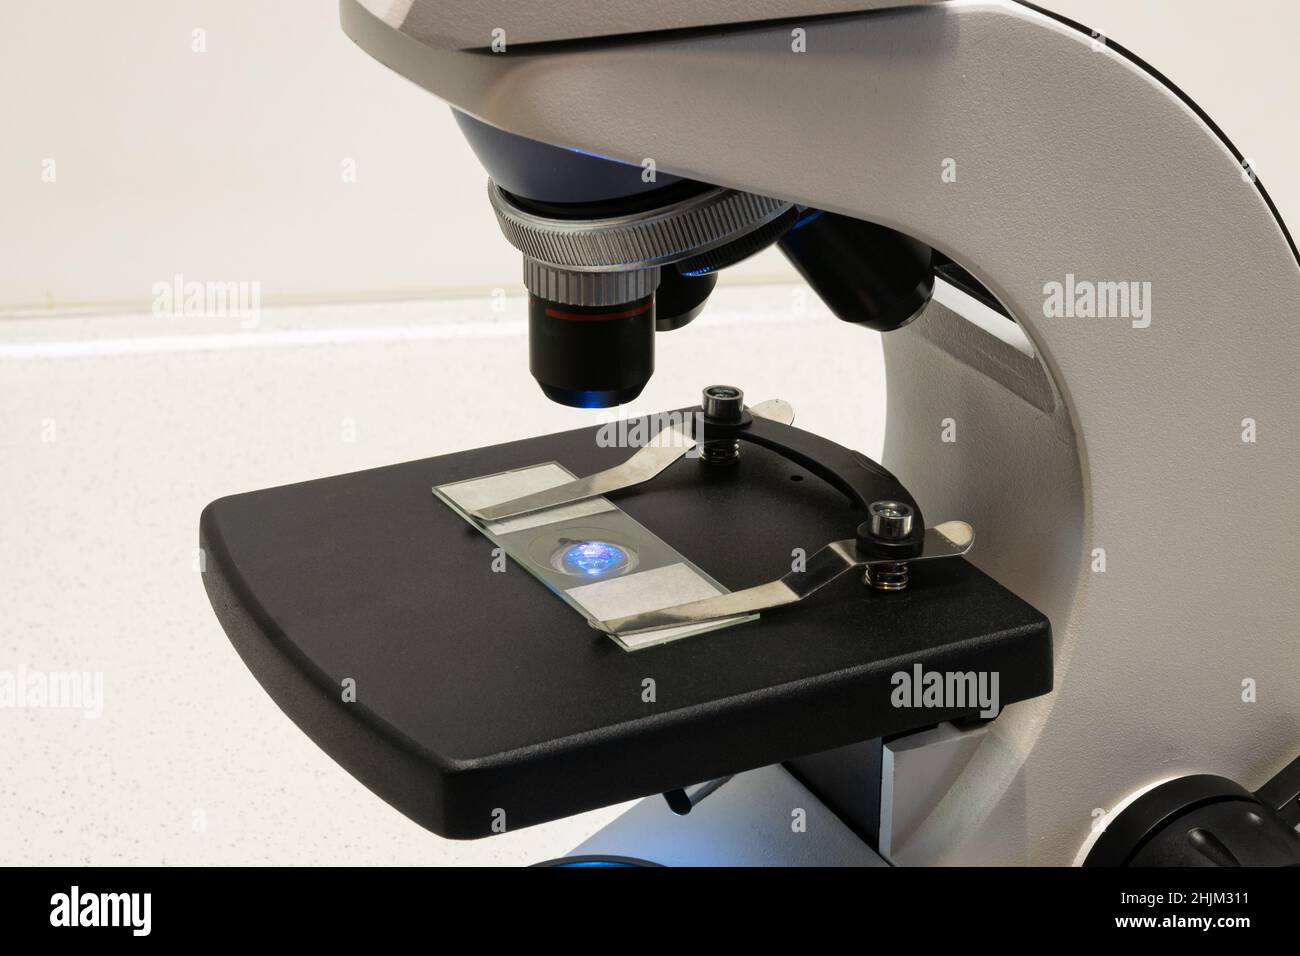 une préparation d'échantillons se trouve sous l'oculaire d'un microscope pour la recherche scientifique ou à des fins éducatives Banque D'Images